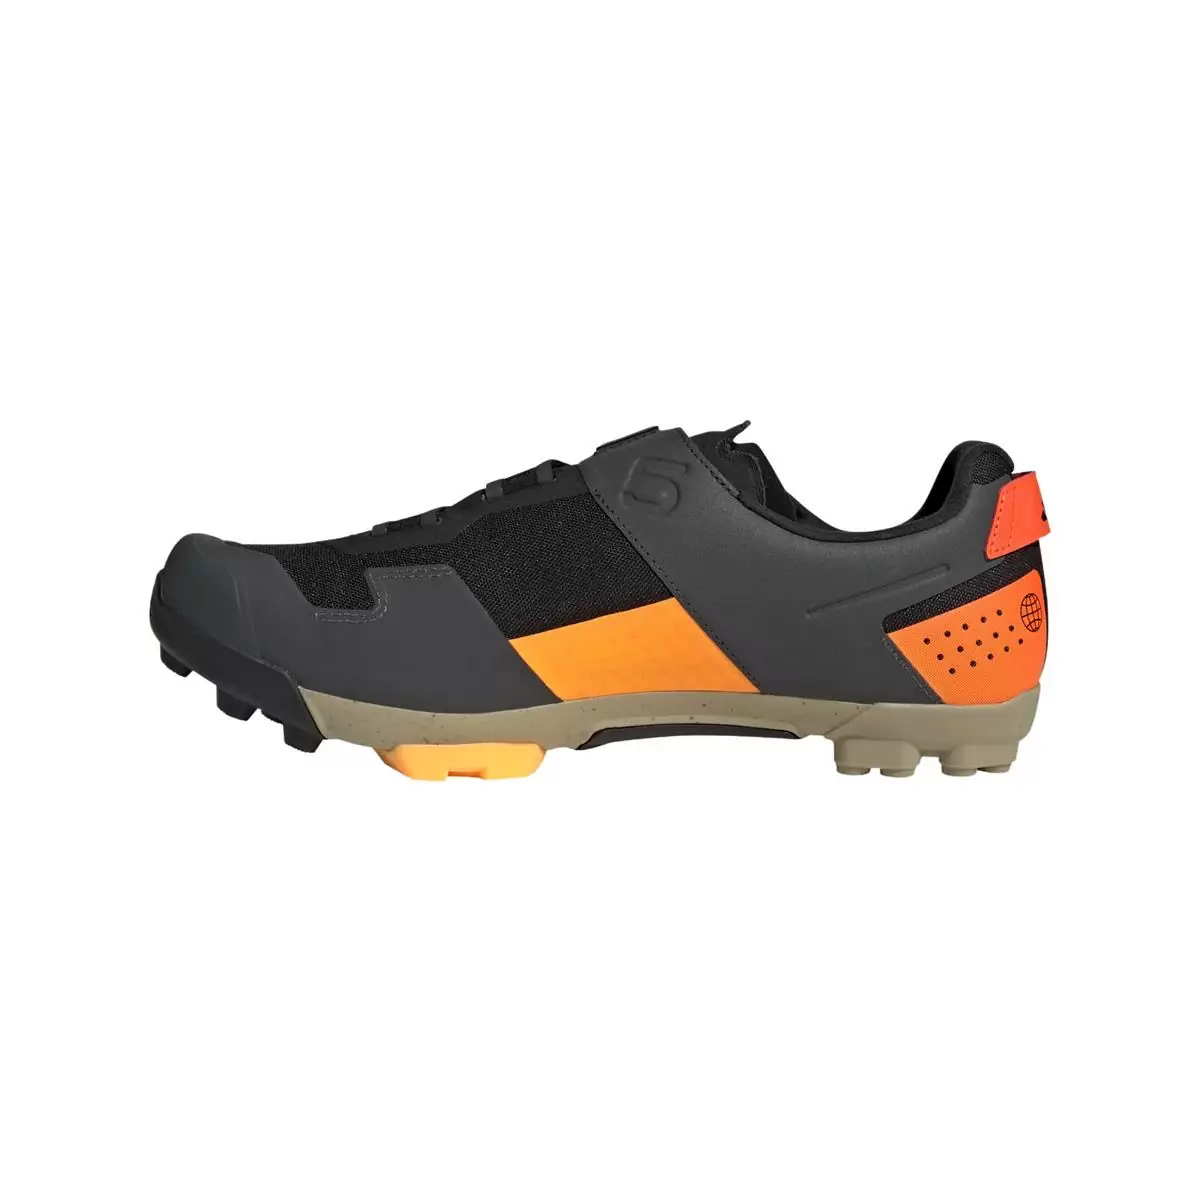 Clip 5.10 Kestrel Boa MTB Shoes Black/Orange Size 42 #2